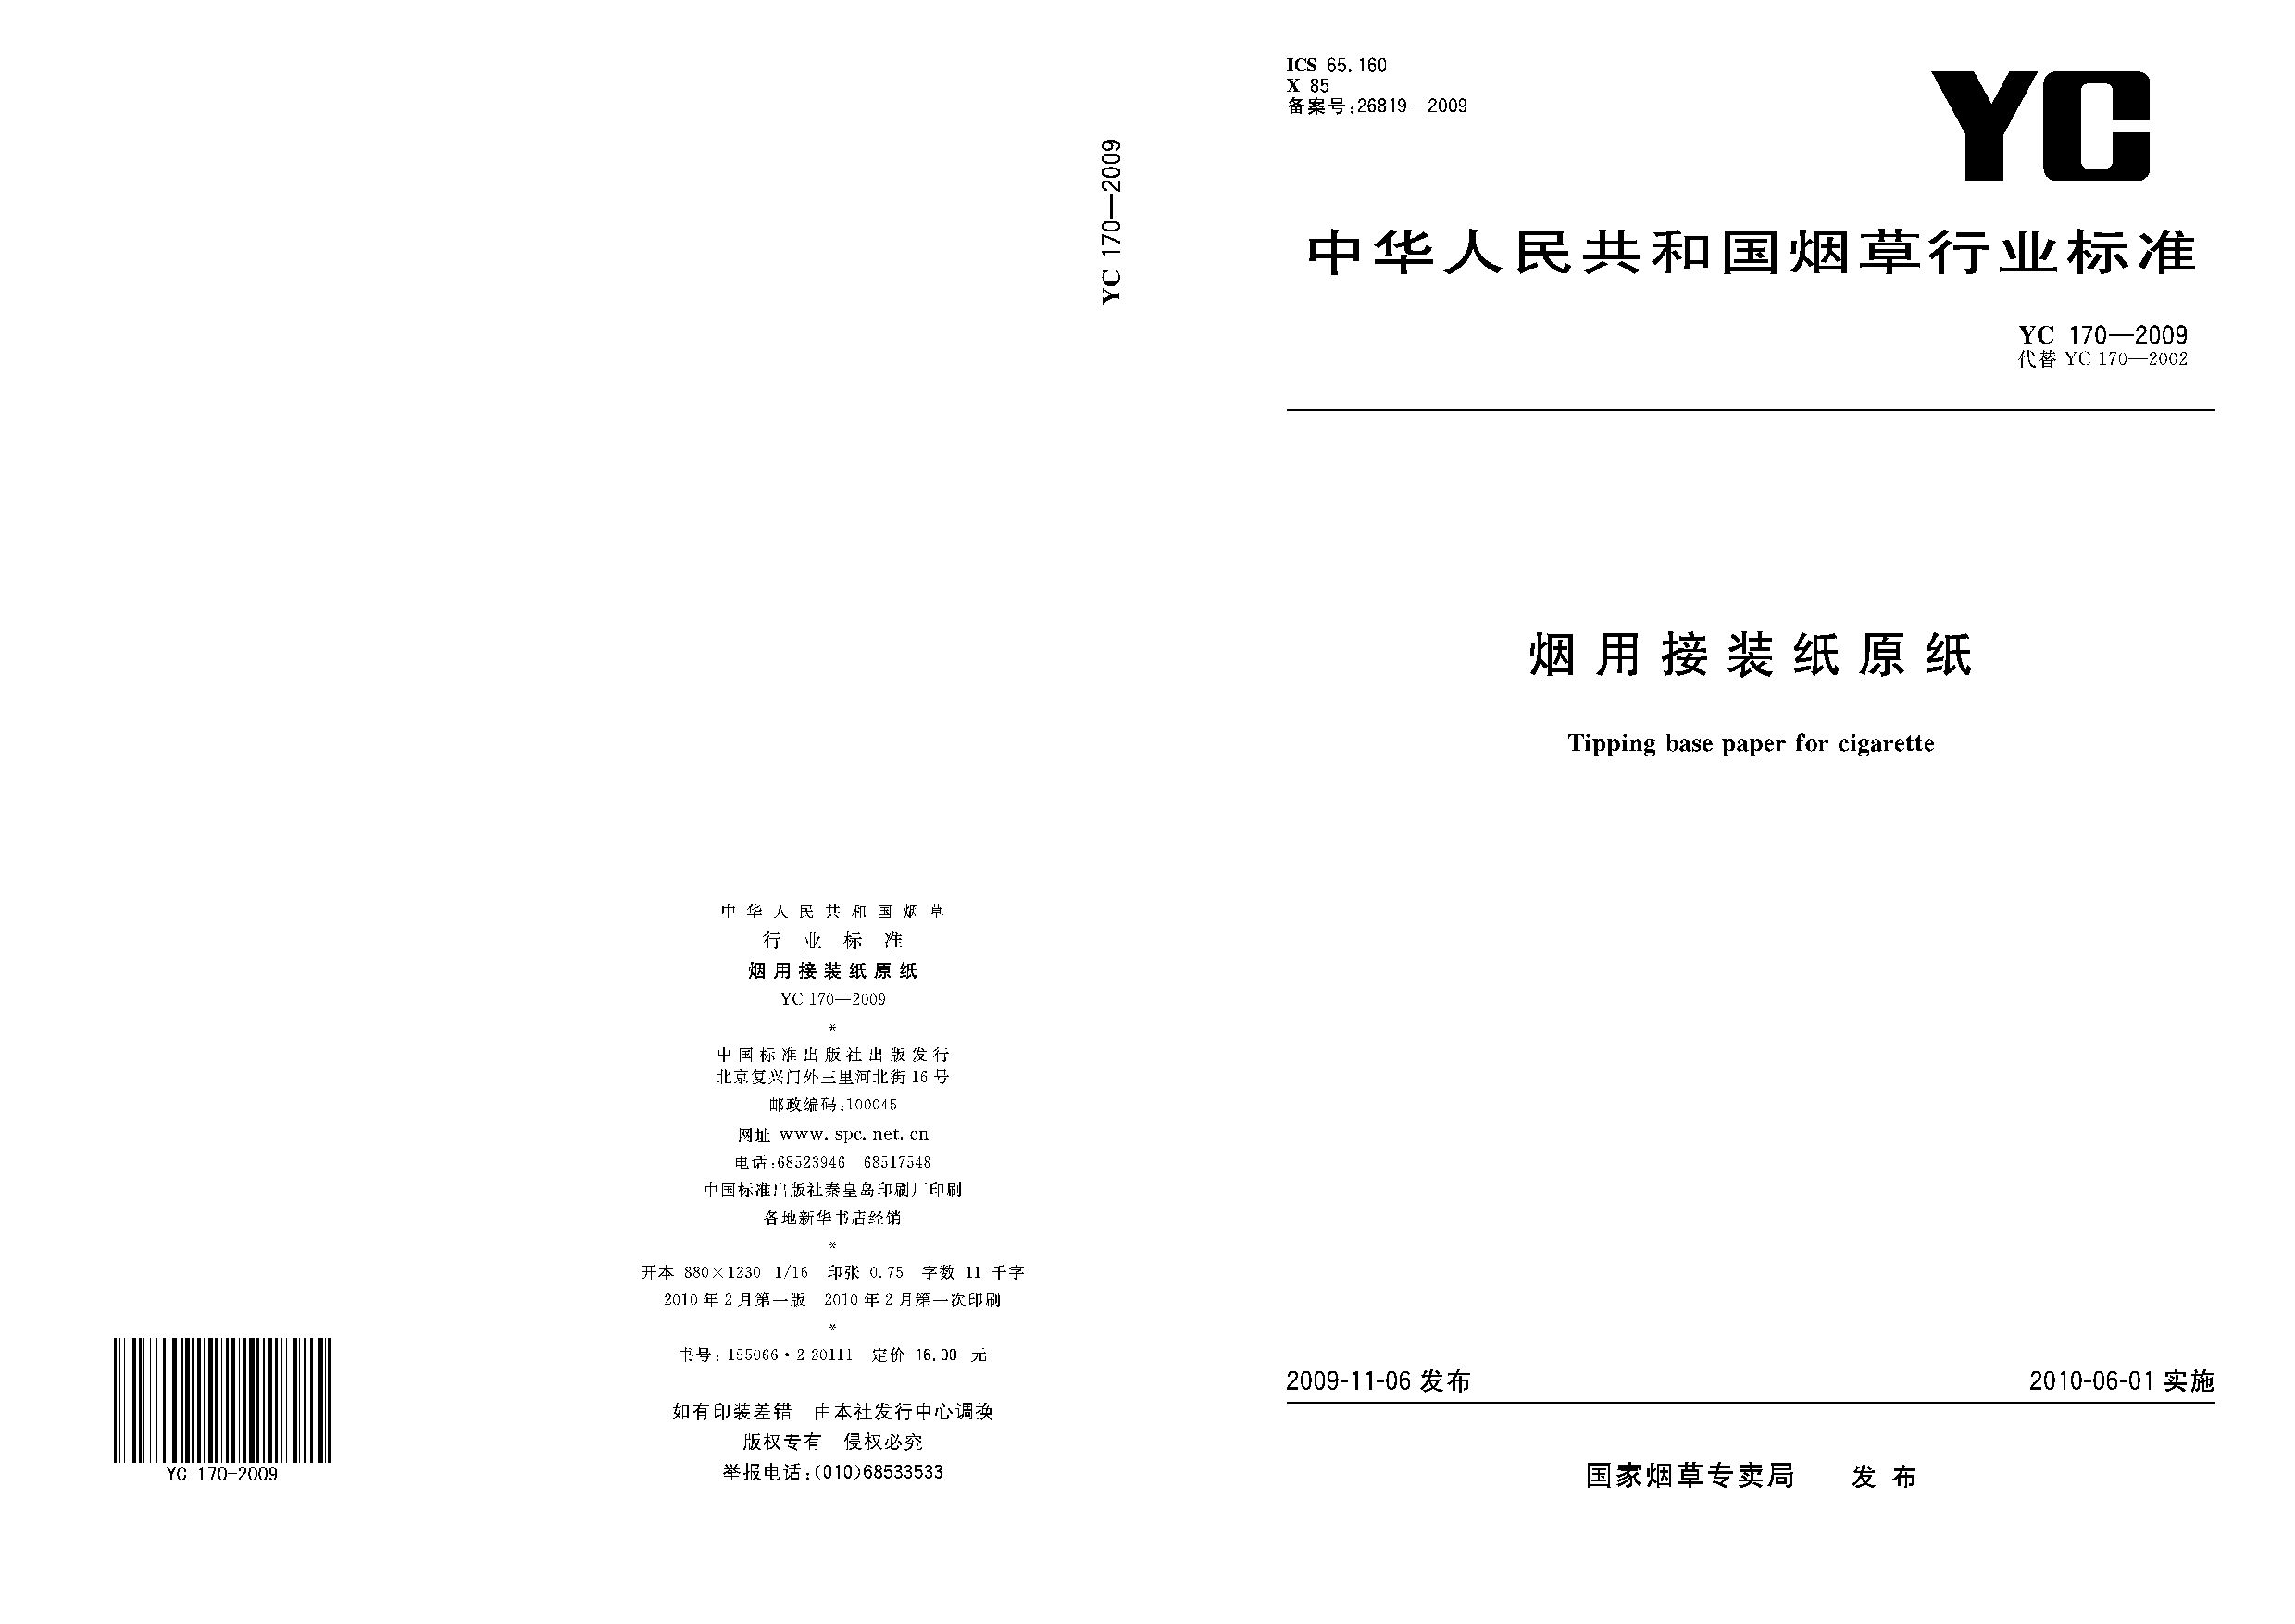 YC 170-2009封面图